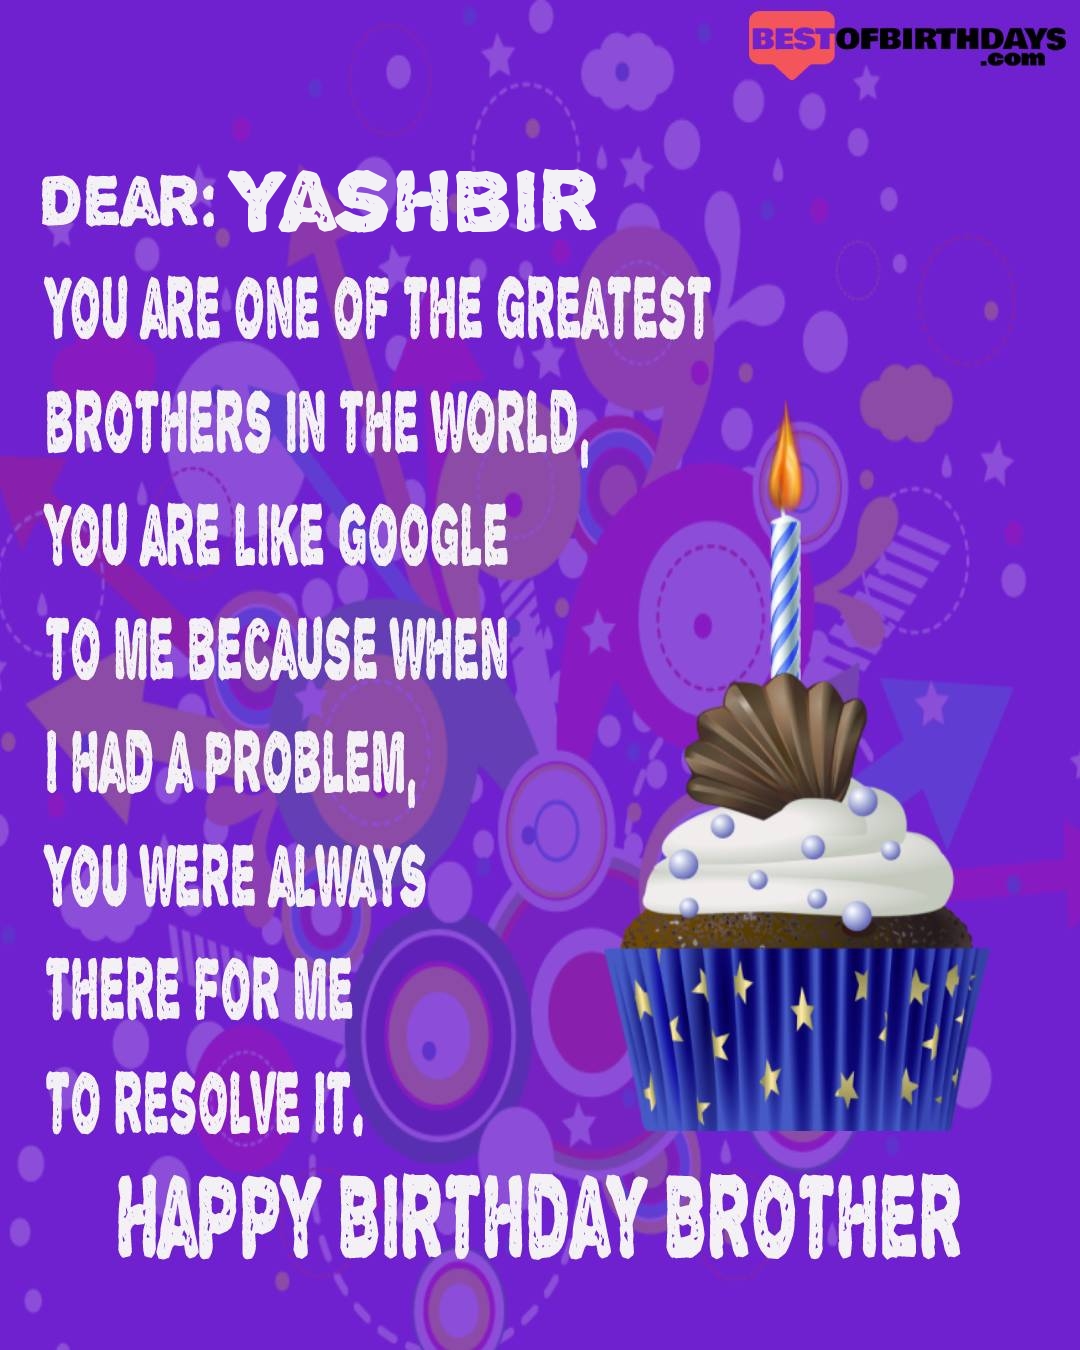 Happy birthday yashbir bhai brother bro